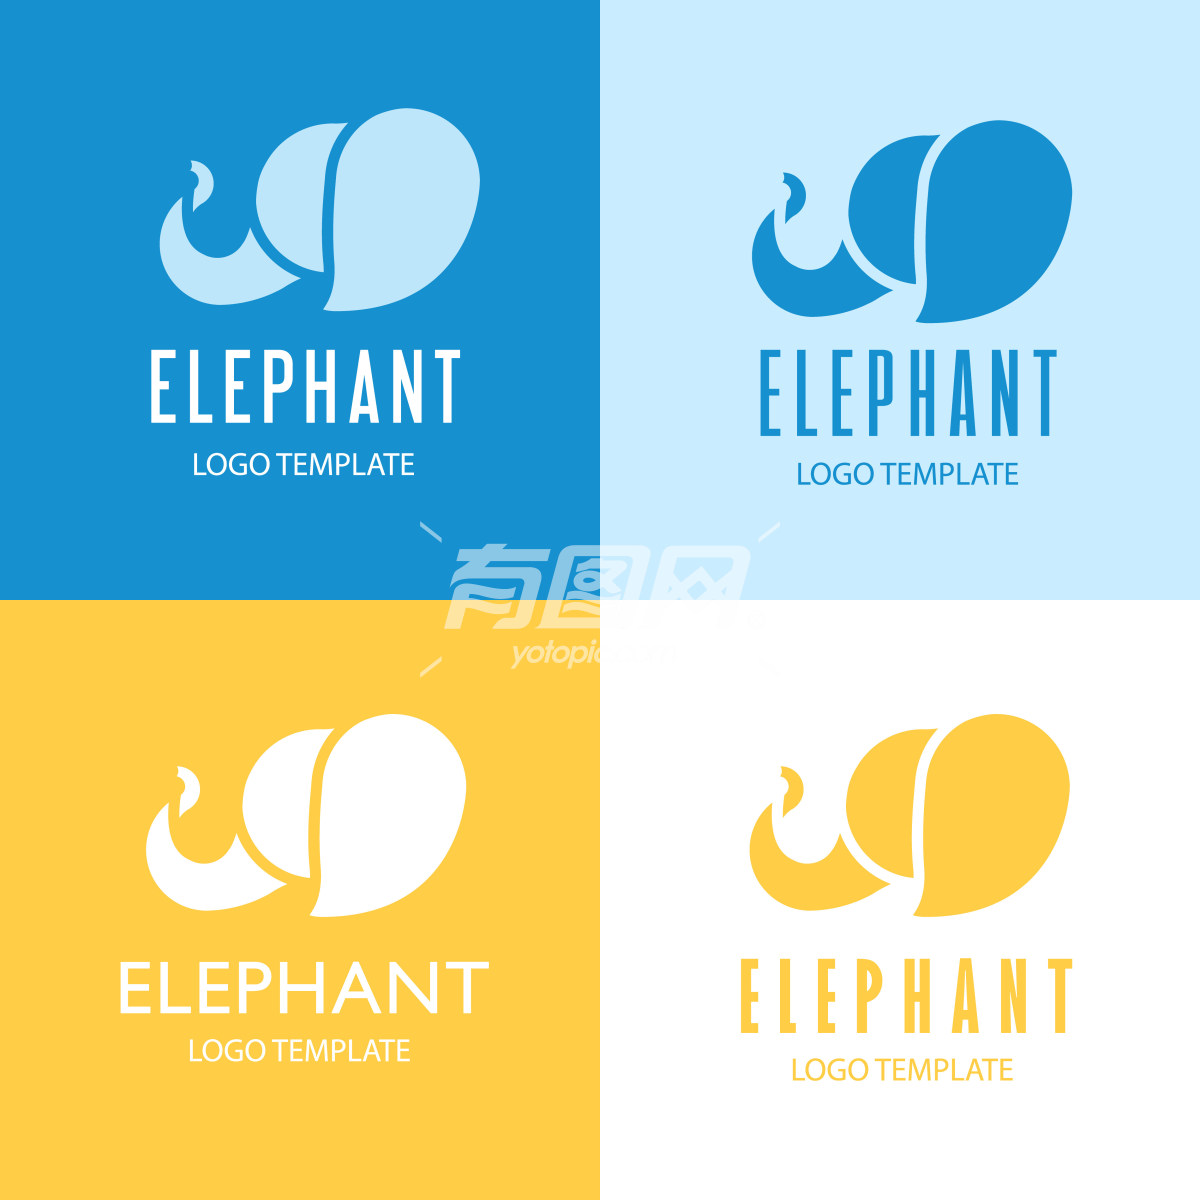 现代简约的设计风格大象的标志